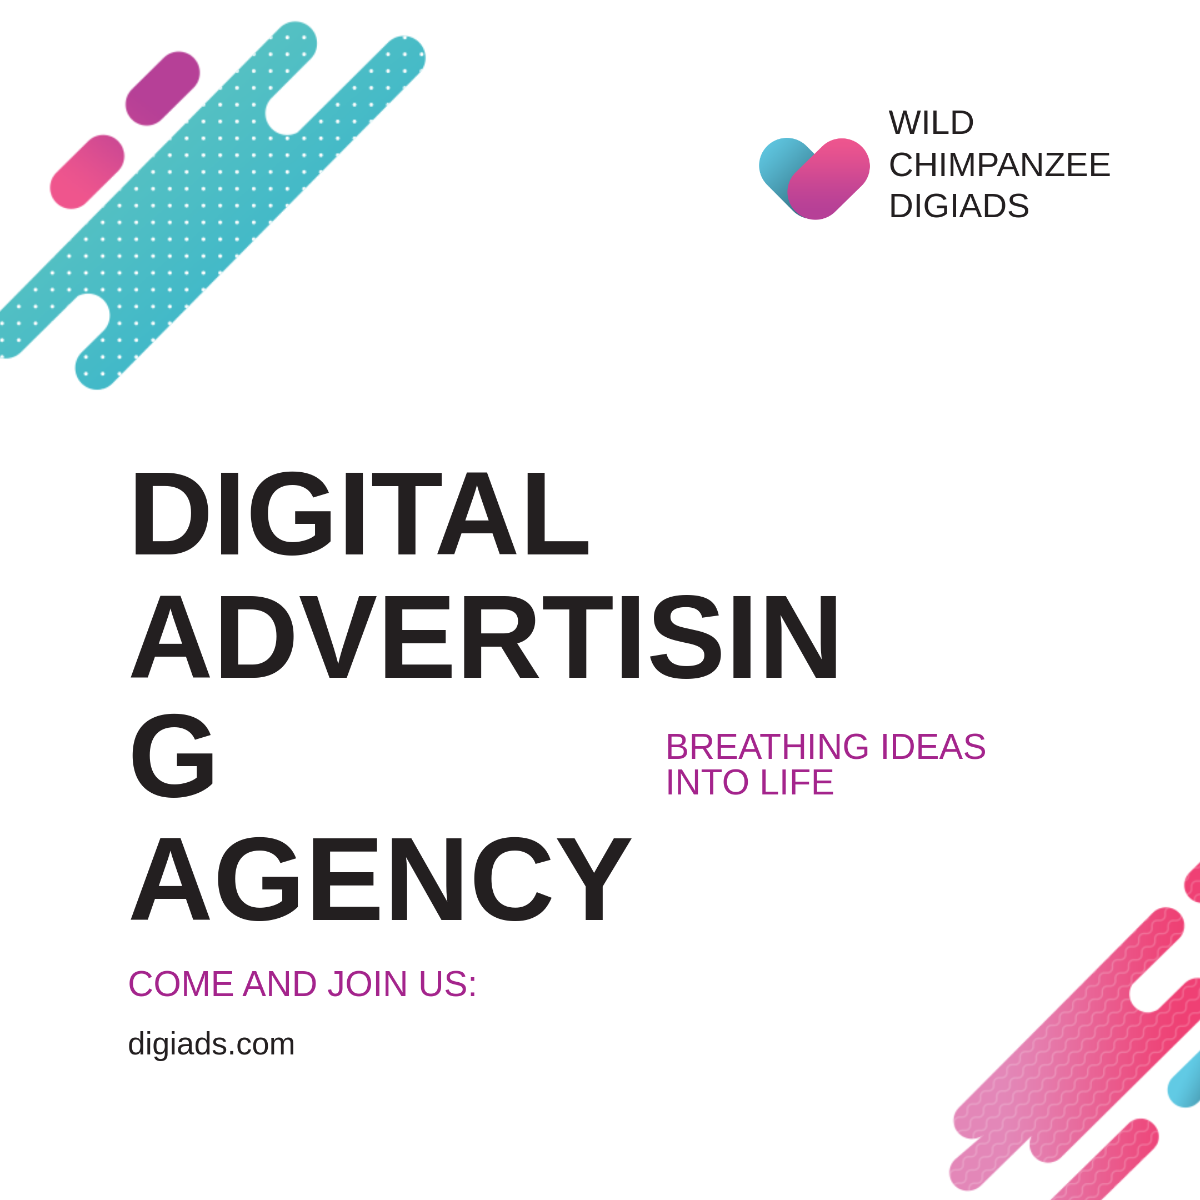 Digital Advertising Agency Instagram Post Template